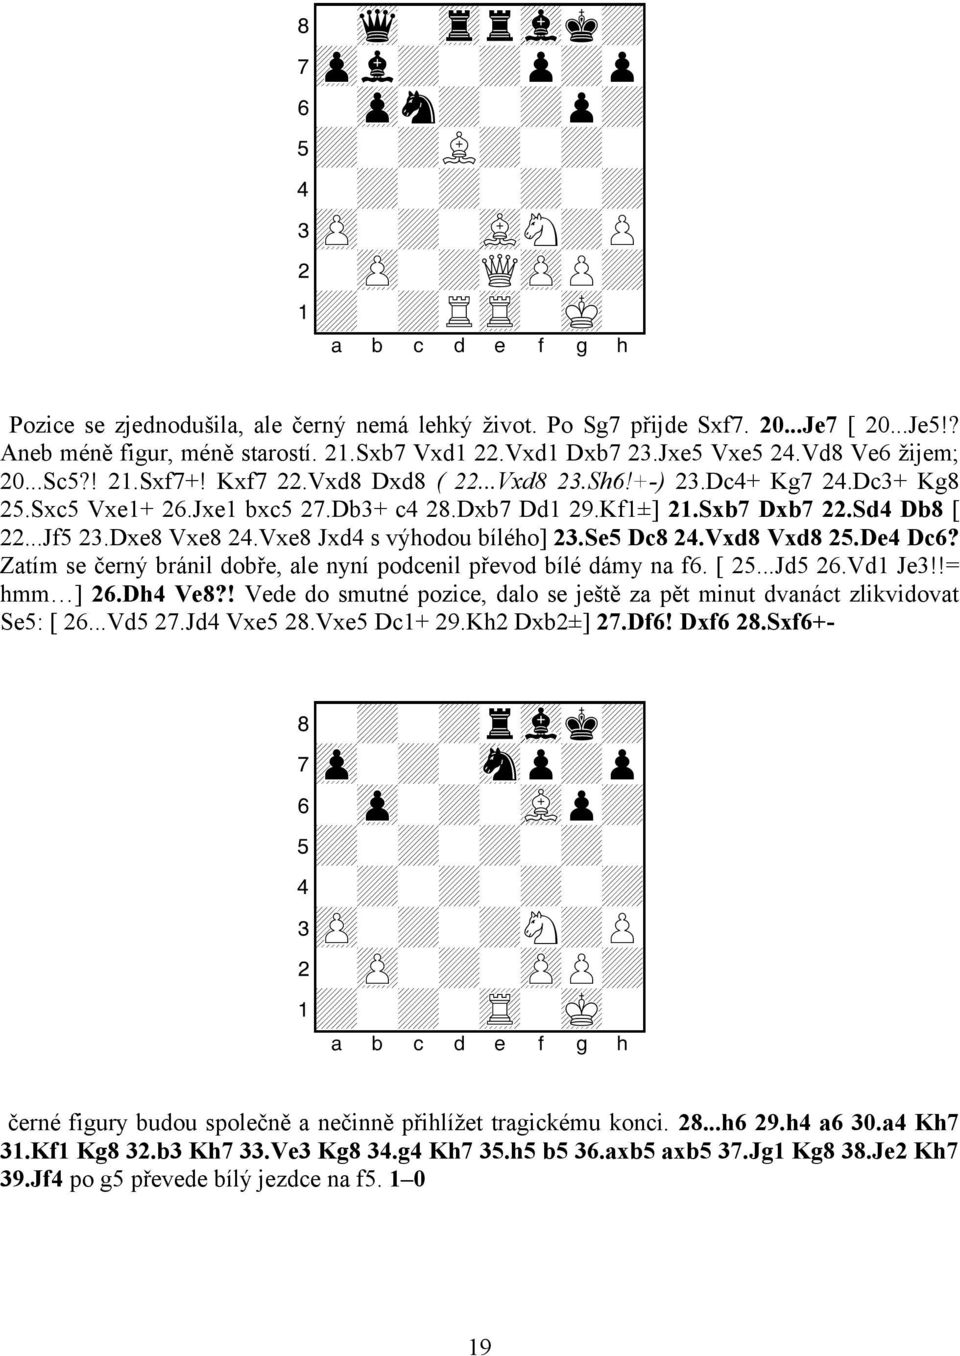 Jxe1 bxc5 27.Db3+ c4 28.Dxb7 Dd1 29.Kf1±] 21.Sxb7 Dxb7 22.Sd4 Db8 [ 22...Jf5 23.Dxe8 Vxe8 24.Vxe8 Jxd4 s výhodou bílého] 23.Se5 Dc8 24.Vxd8 Vxd8 25.De4 Dc6?